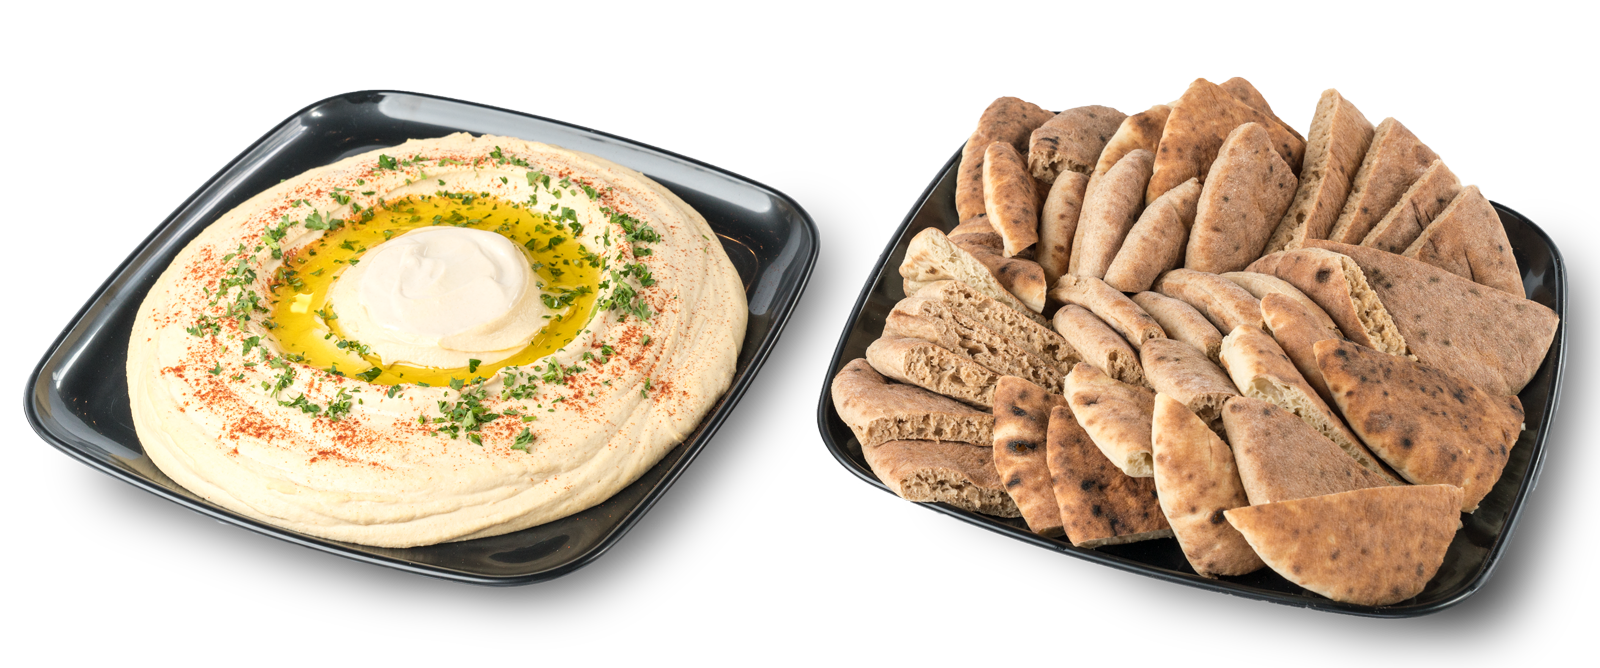 Catering Oren S Hummus Authentic Israeli Food